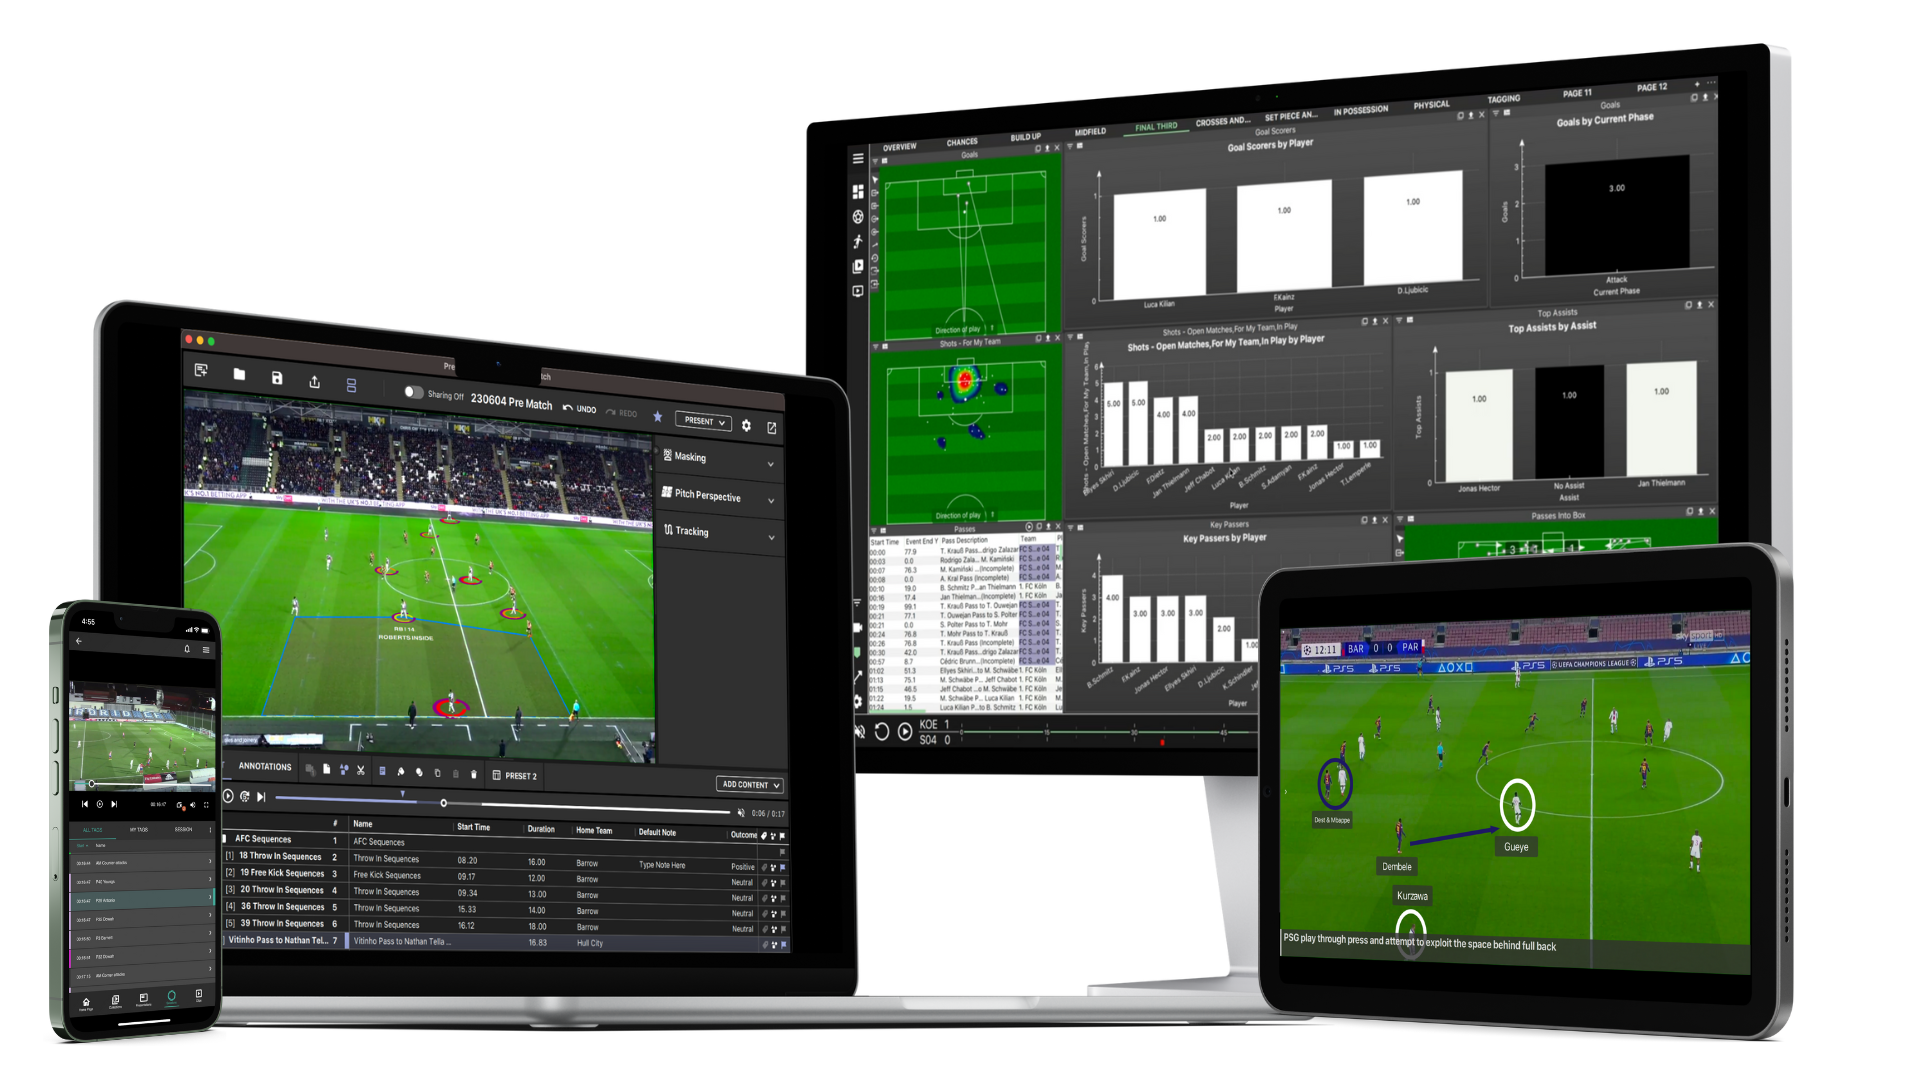 MatchTracker のパフォーマンス分析のさまざまな機能を示すマルチデバイス ディスプレイ。この画像では、スマートフォン、タブレット、コンピューター モニター上のソフトウェアが紹介されています。デバイスには、サッカーの試合映像、選手の位置と動きのデータ オーバーレイ、選手の統計情報や試合イベントの詳細を示すチャートやグラフなどのさまざまな分析パネルが表示されます。